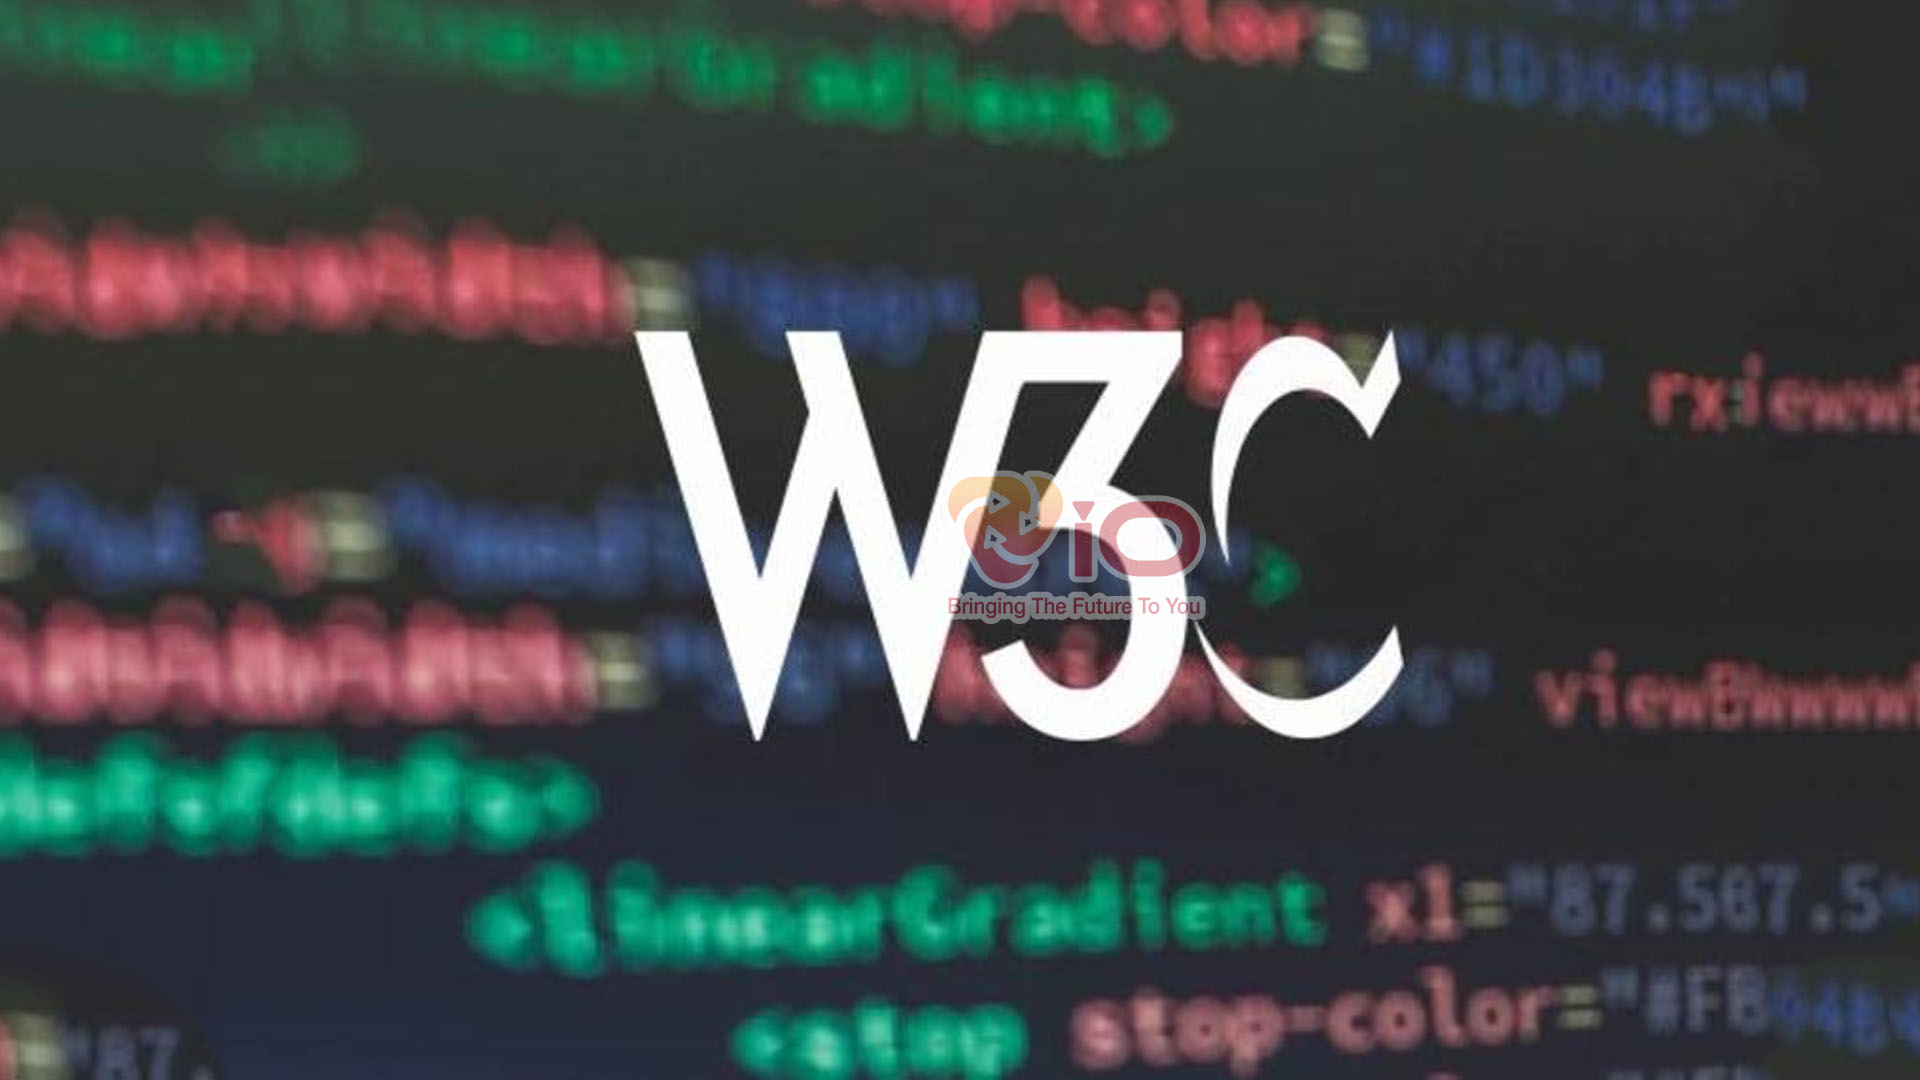 tiêu chuẩn w3c